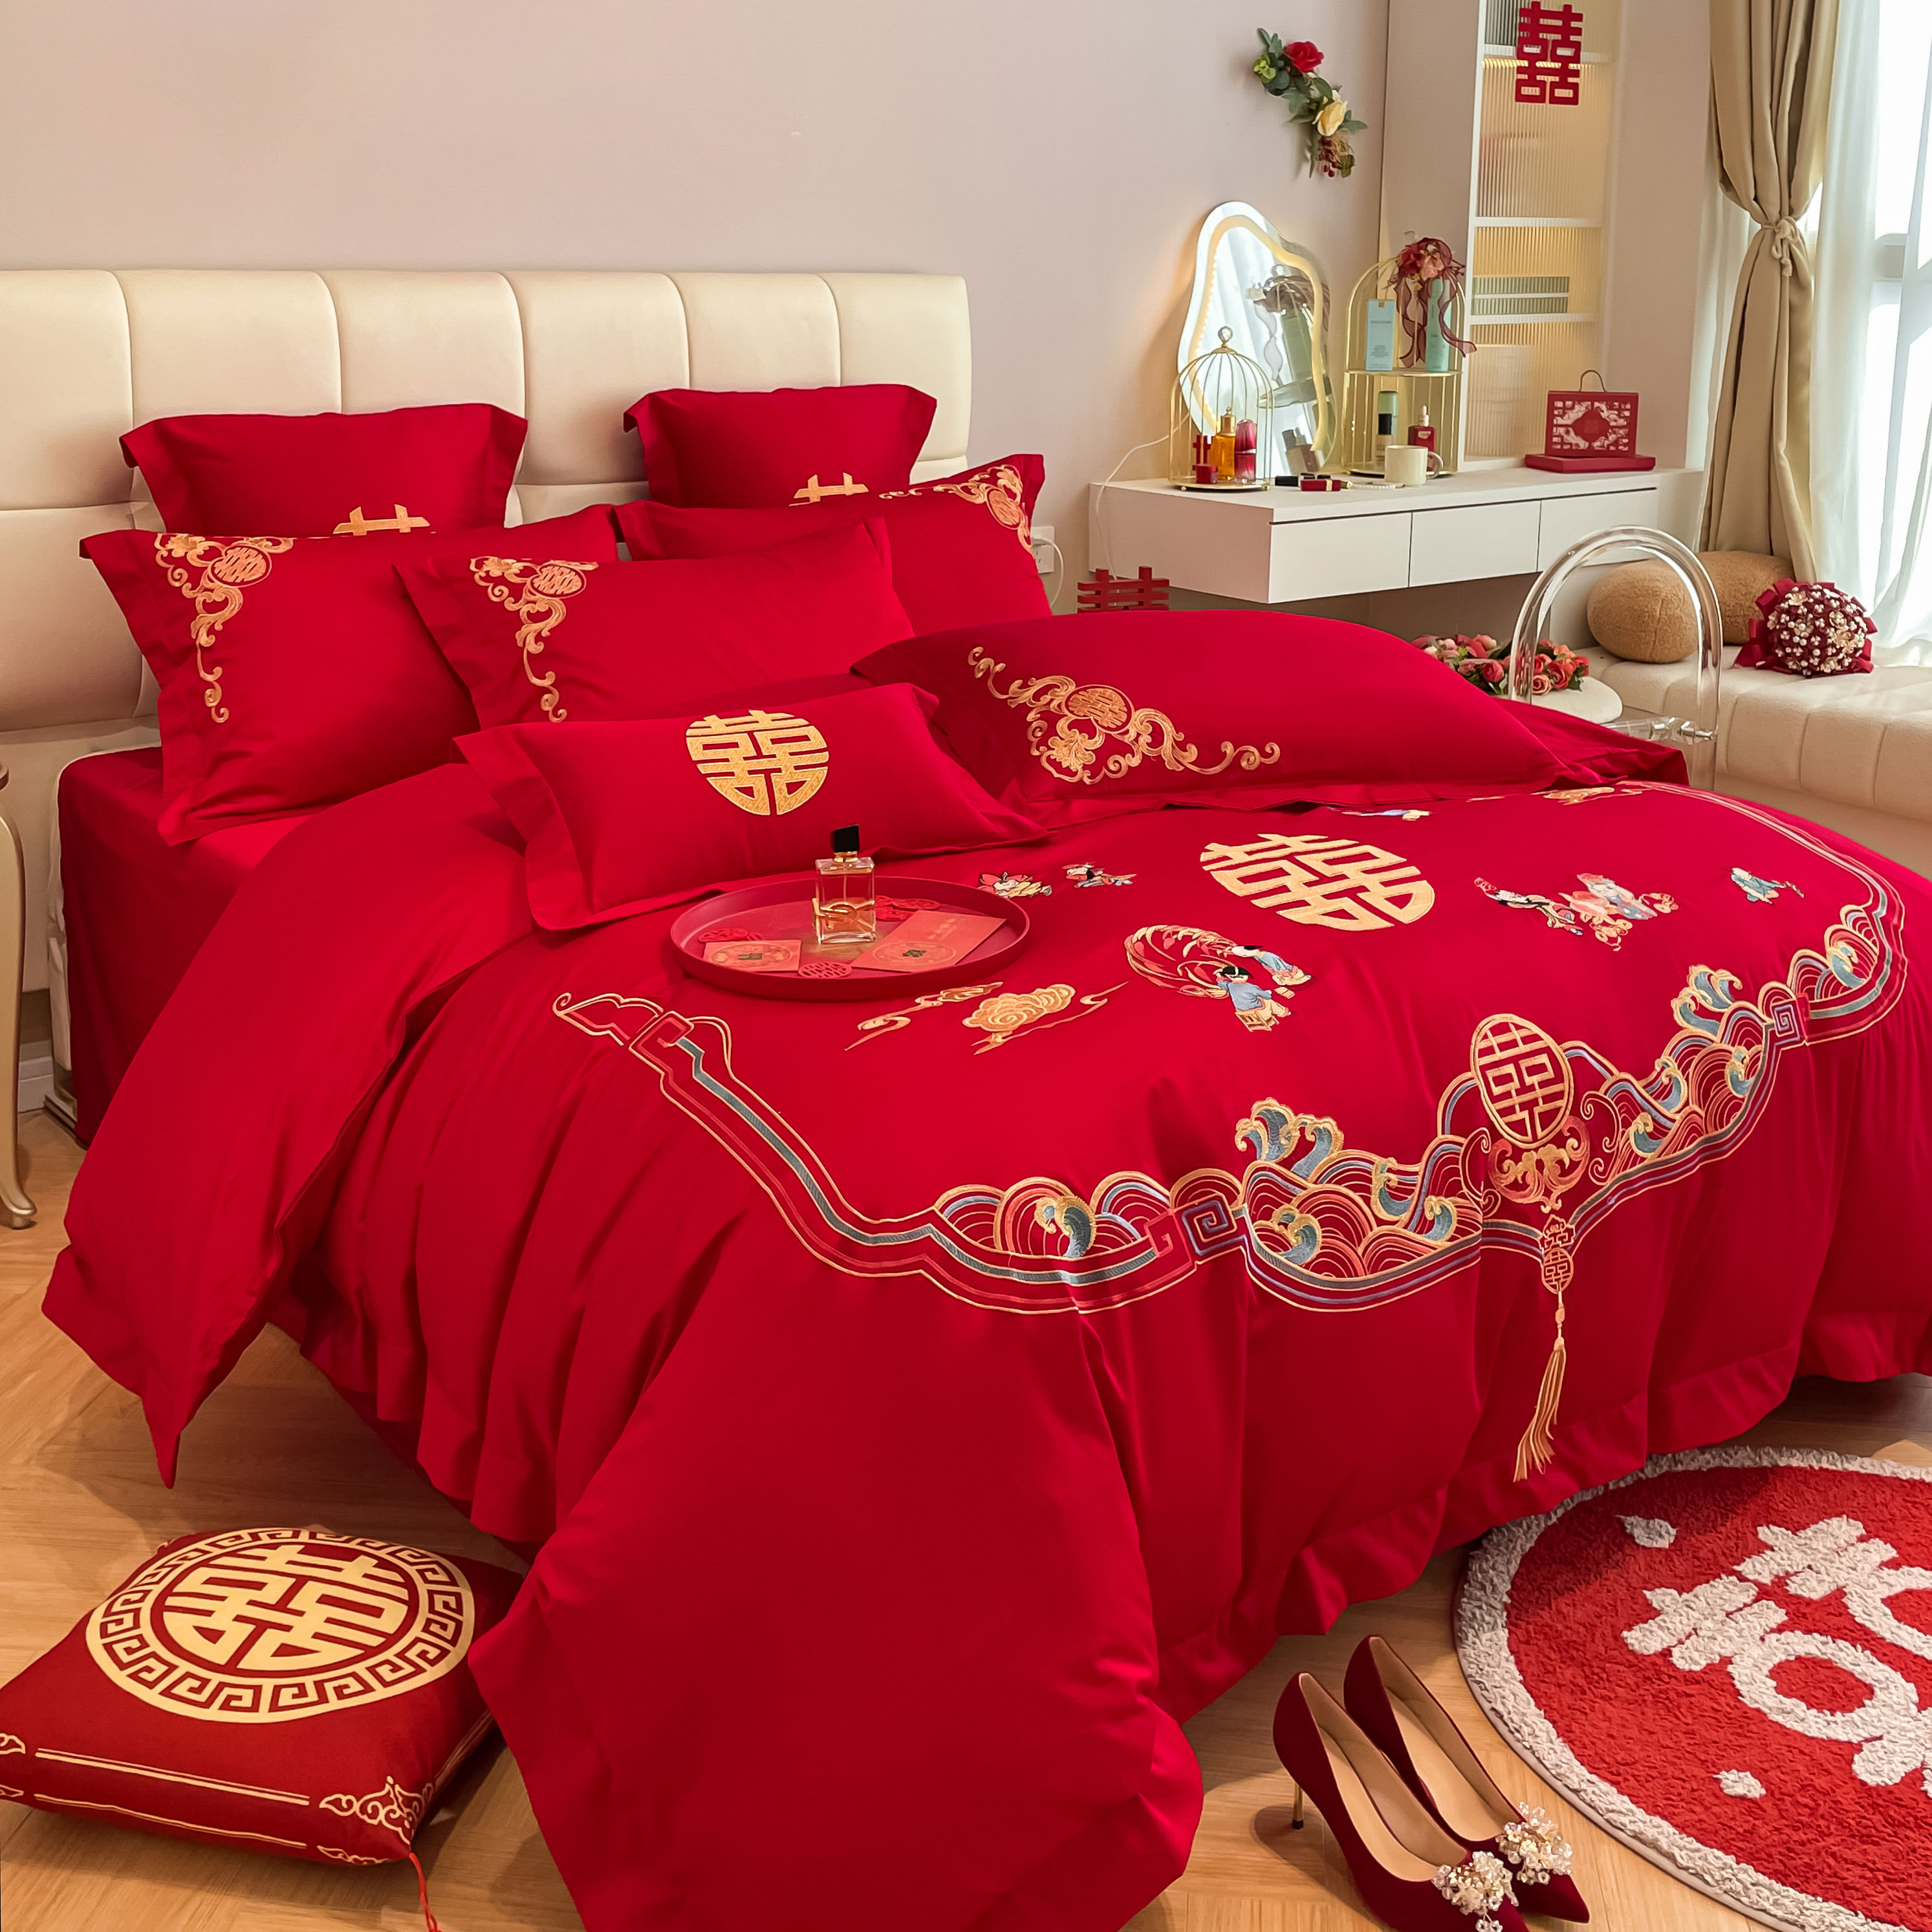 新中式100支全棉刺绣婚庆四件套大红色被套纯棉高档结婚床上用品4